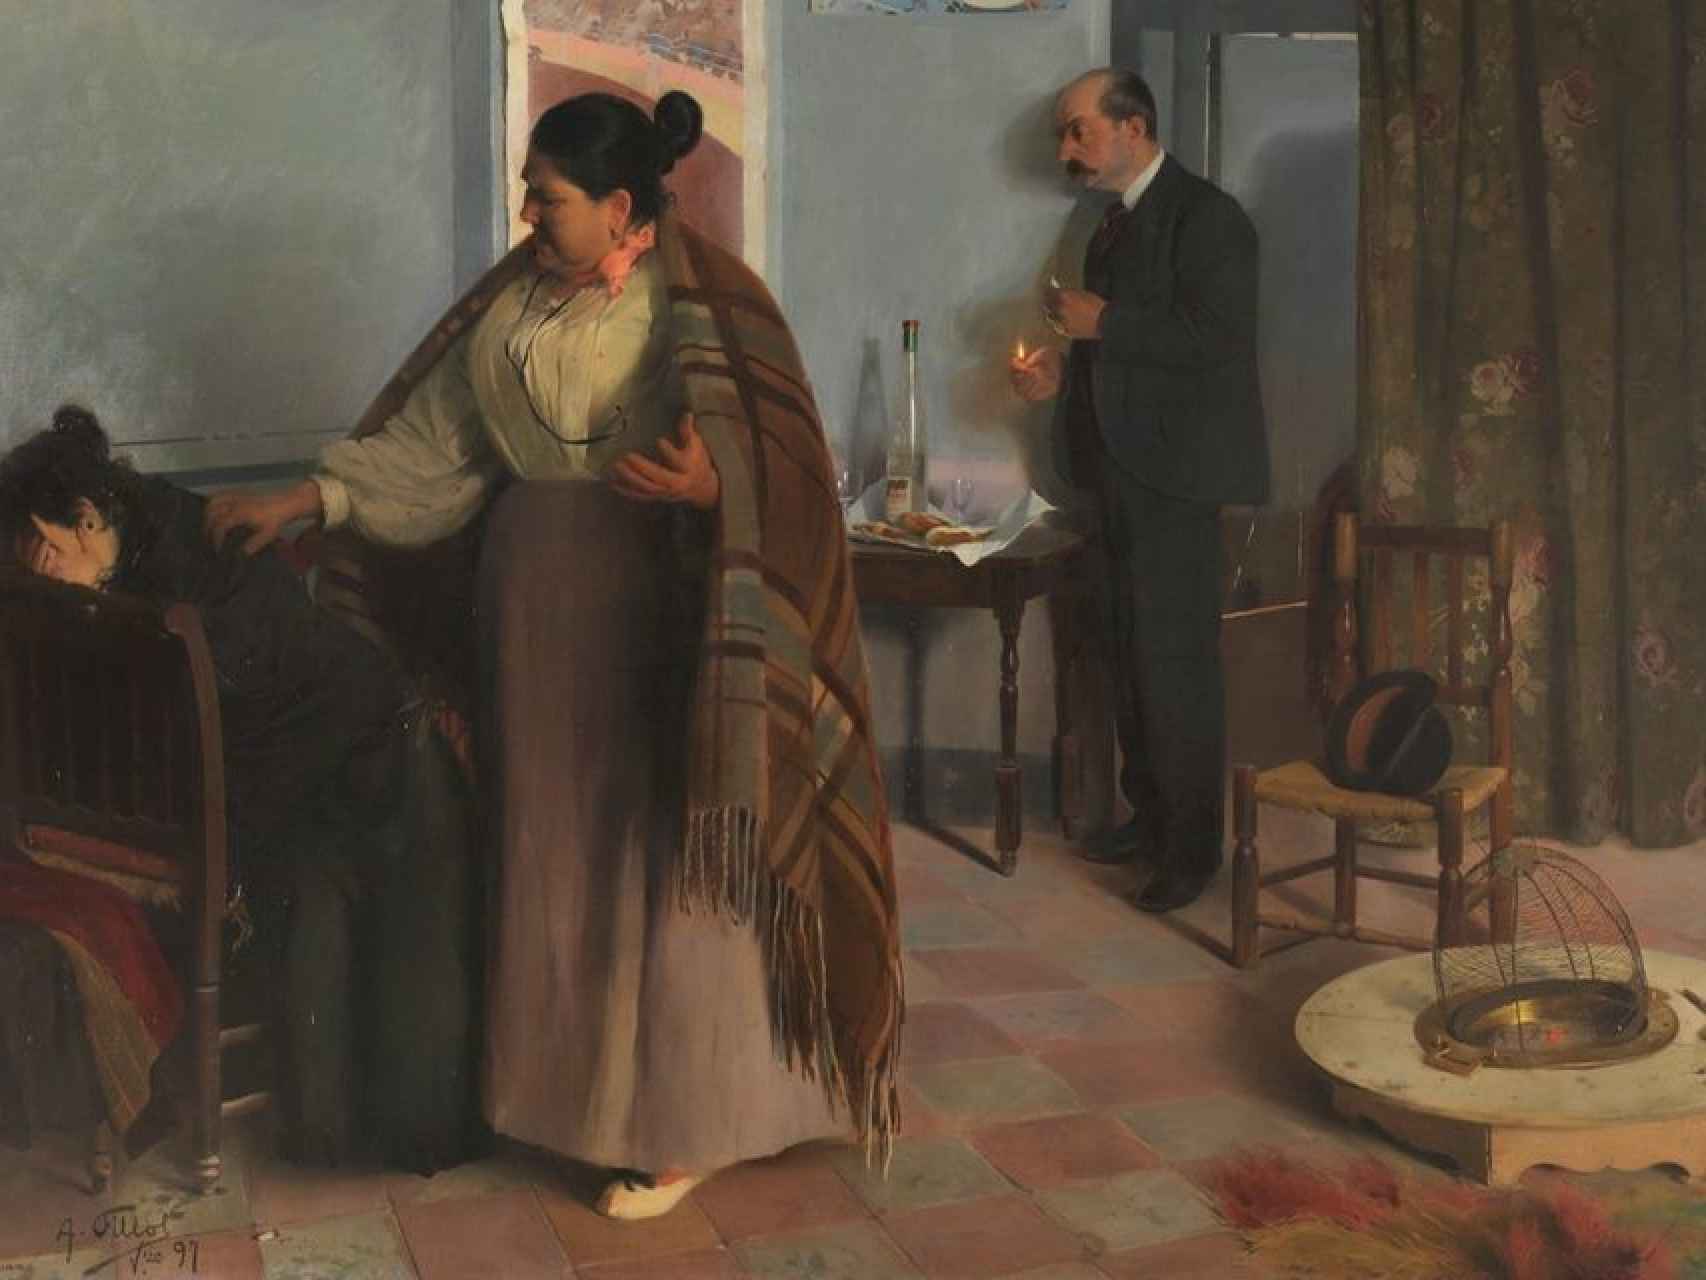 Mientras Sáenz pinta a sus niñas desnudas, Fillol denuncia la prostitución en La bestia humana (1897).